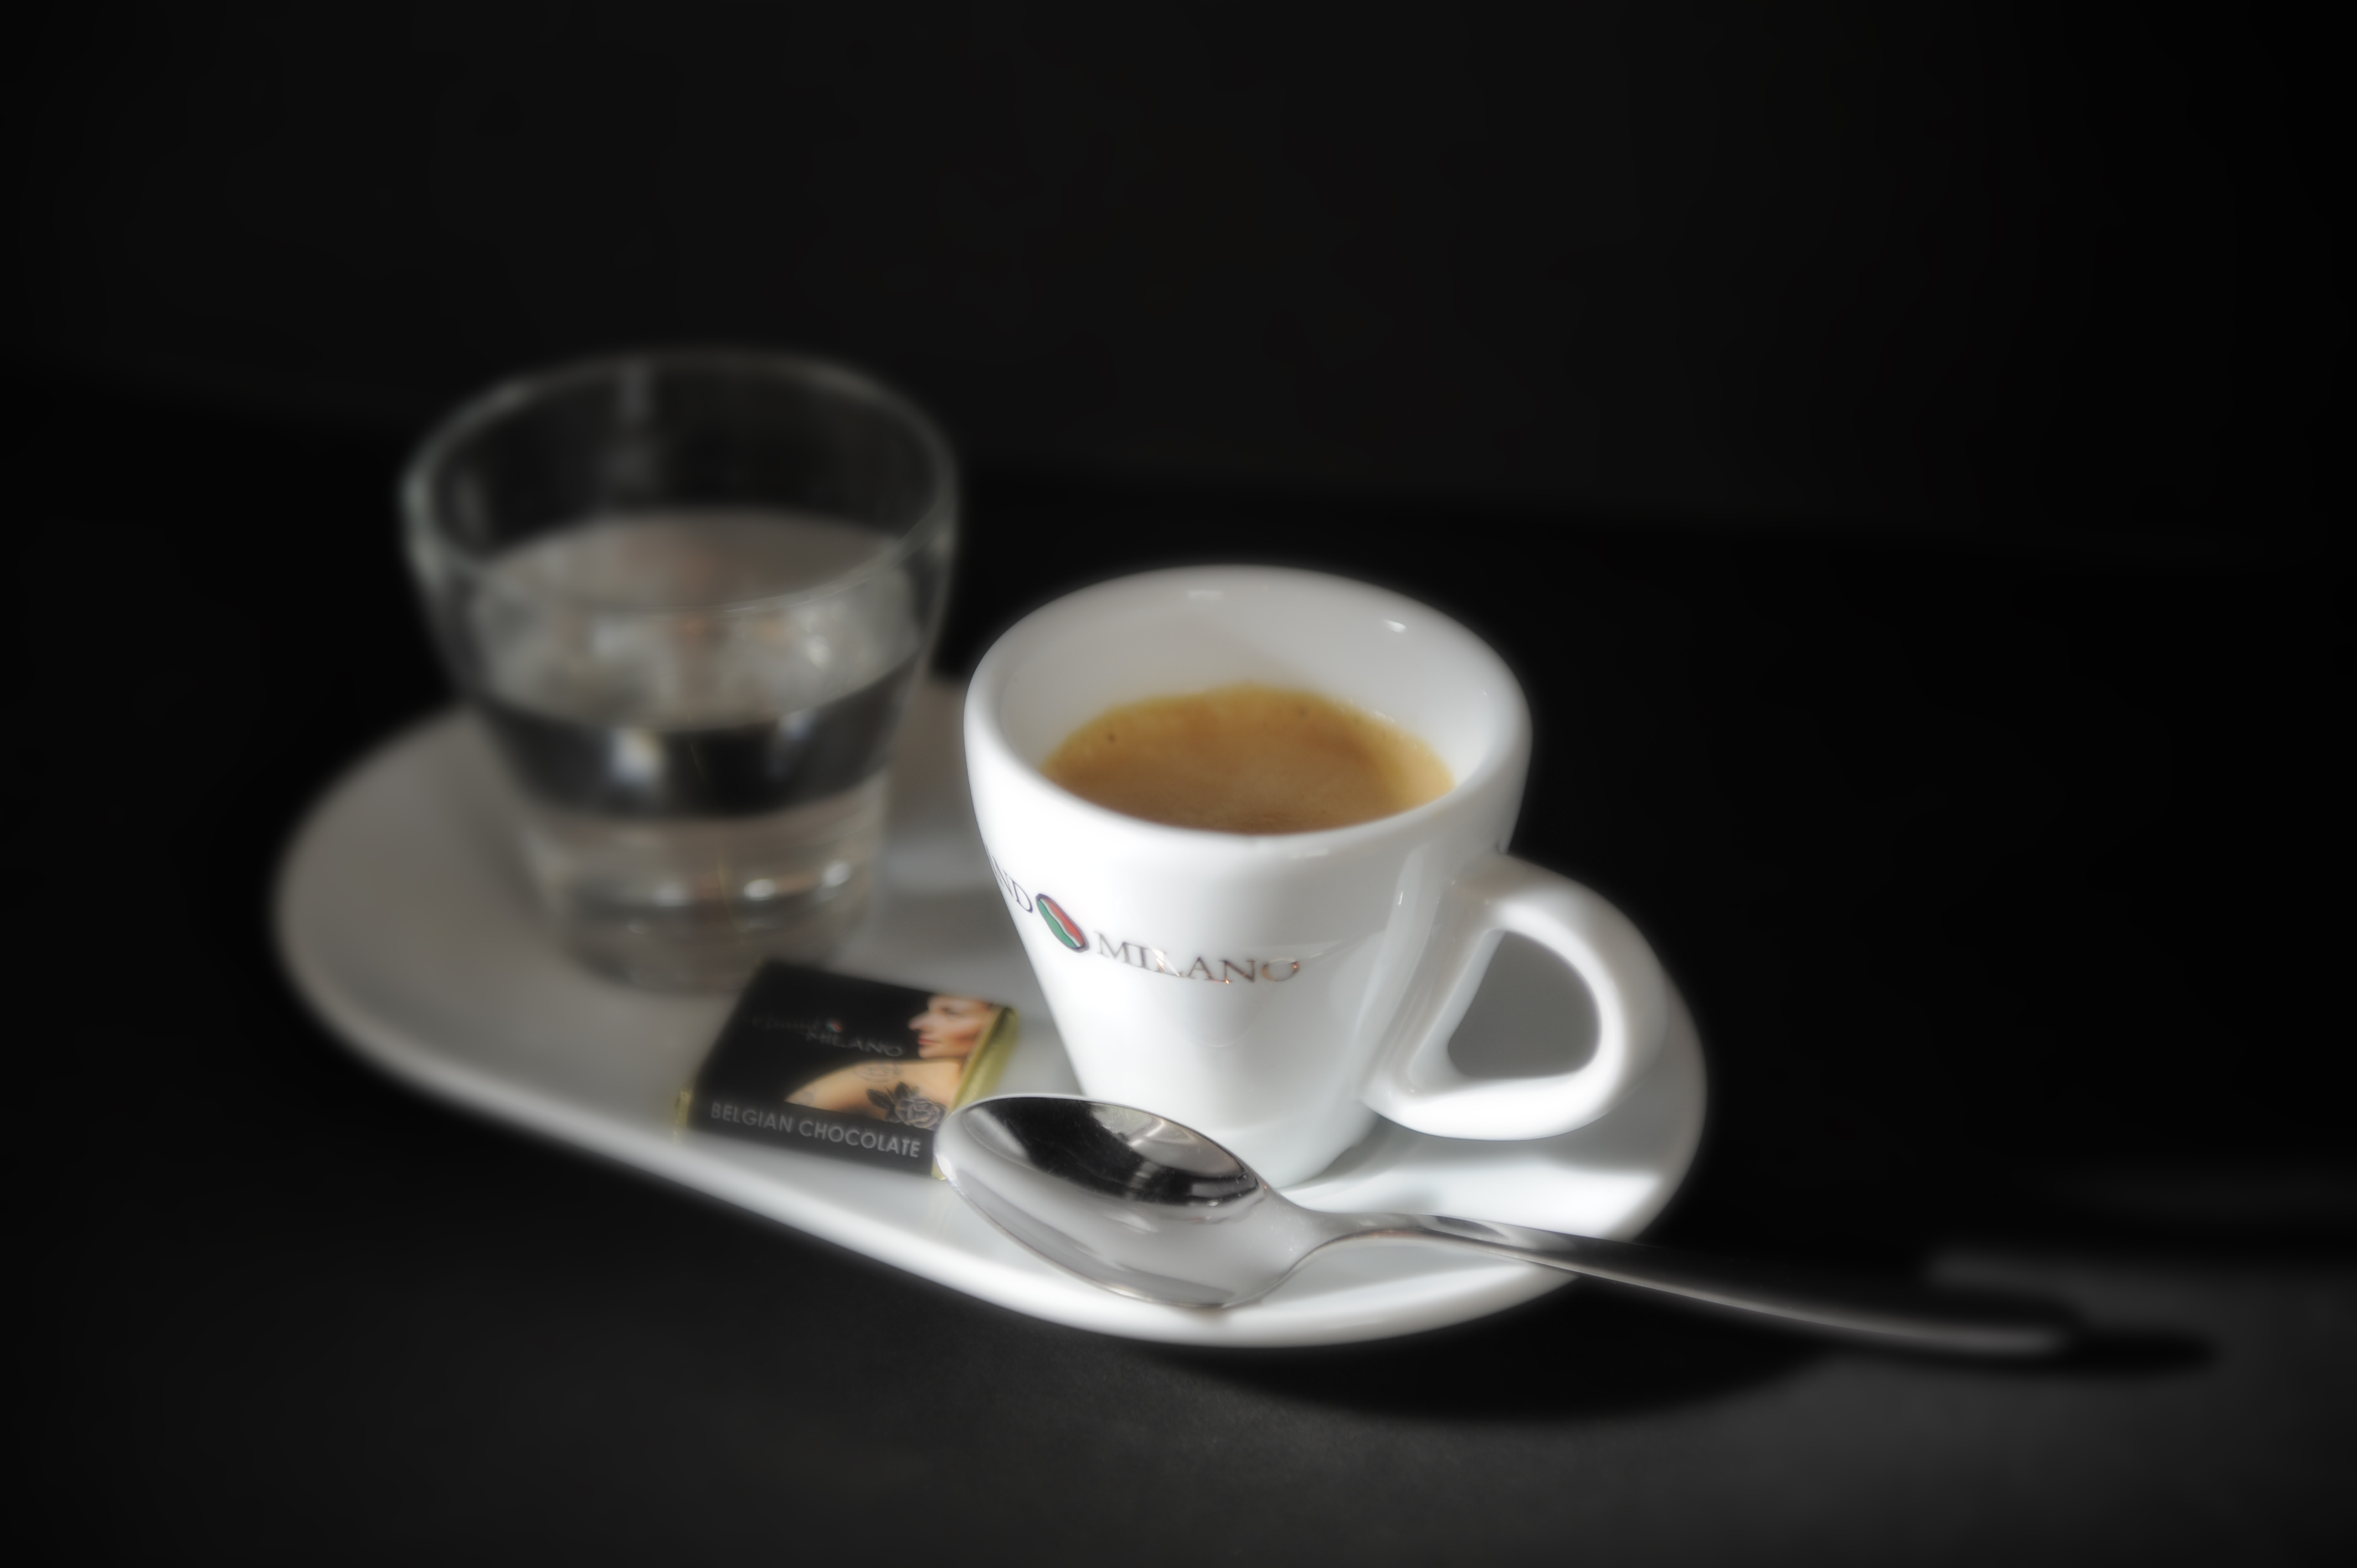 IMPING'S Kaffee GRAND MILANO Bohnen